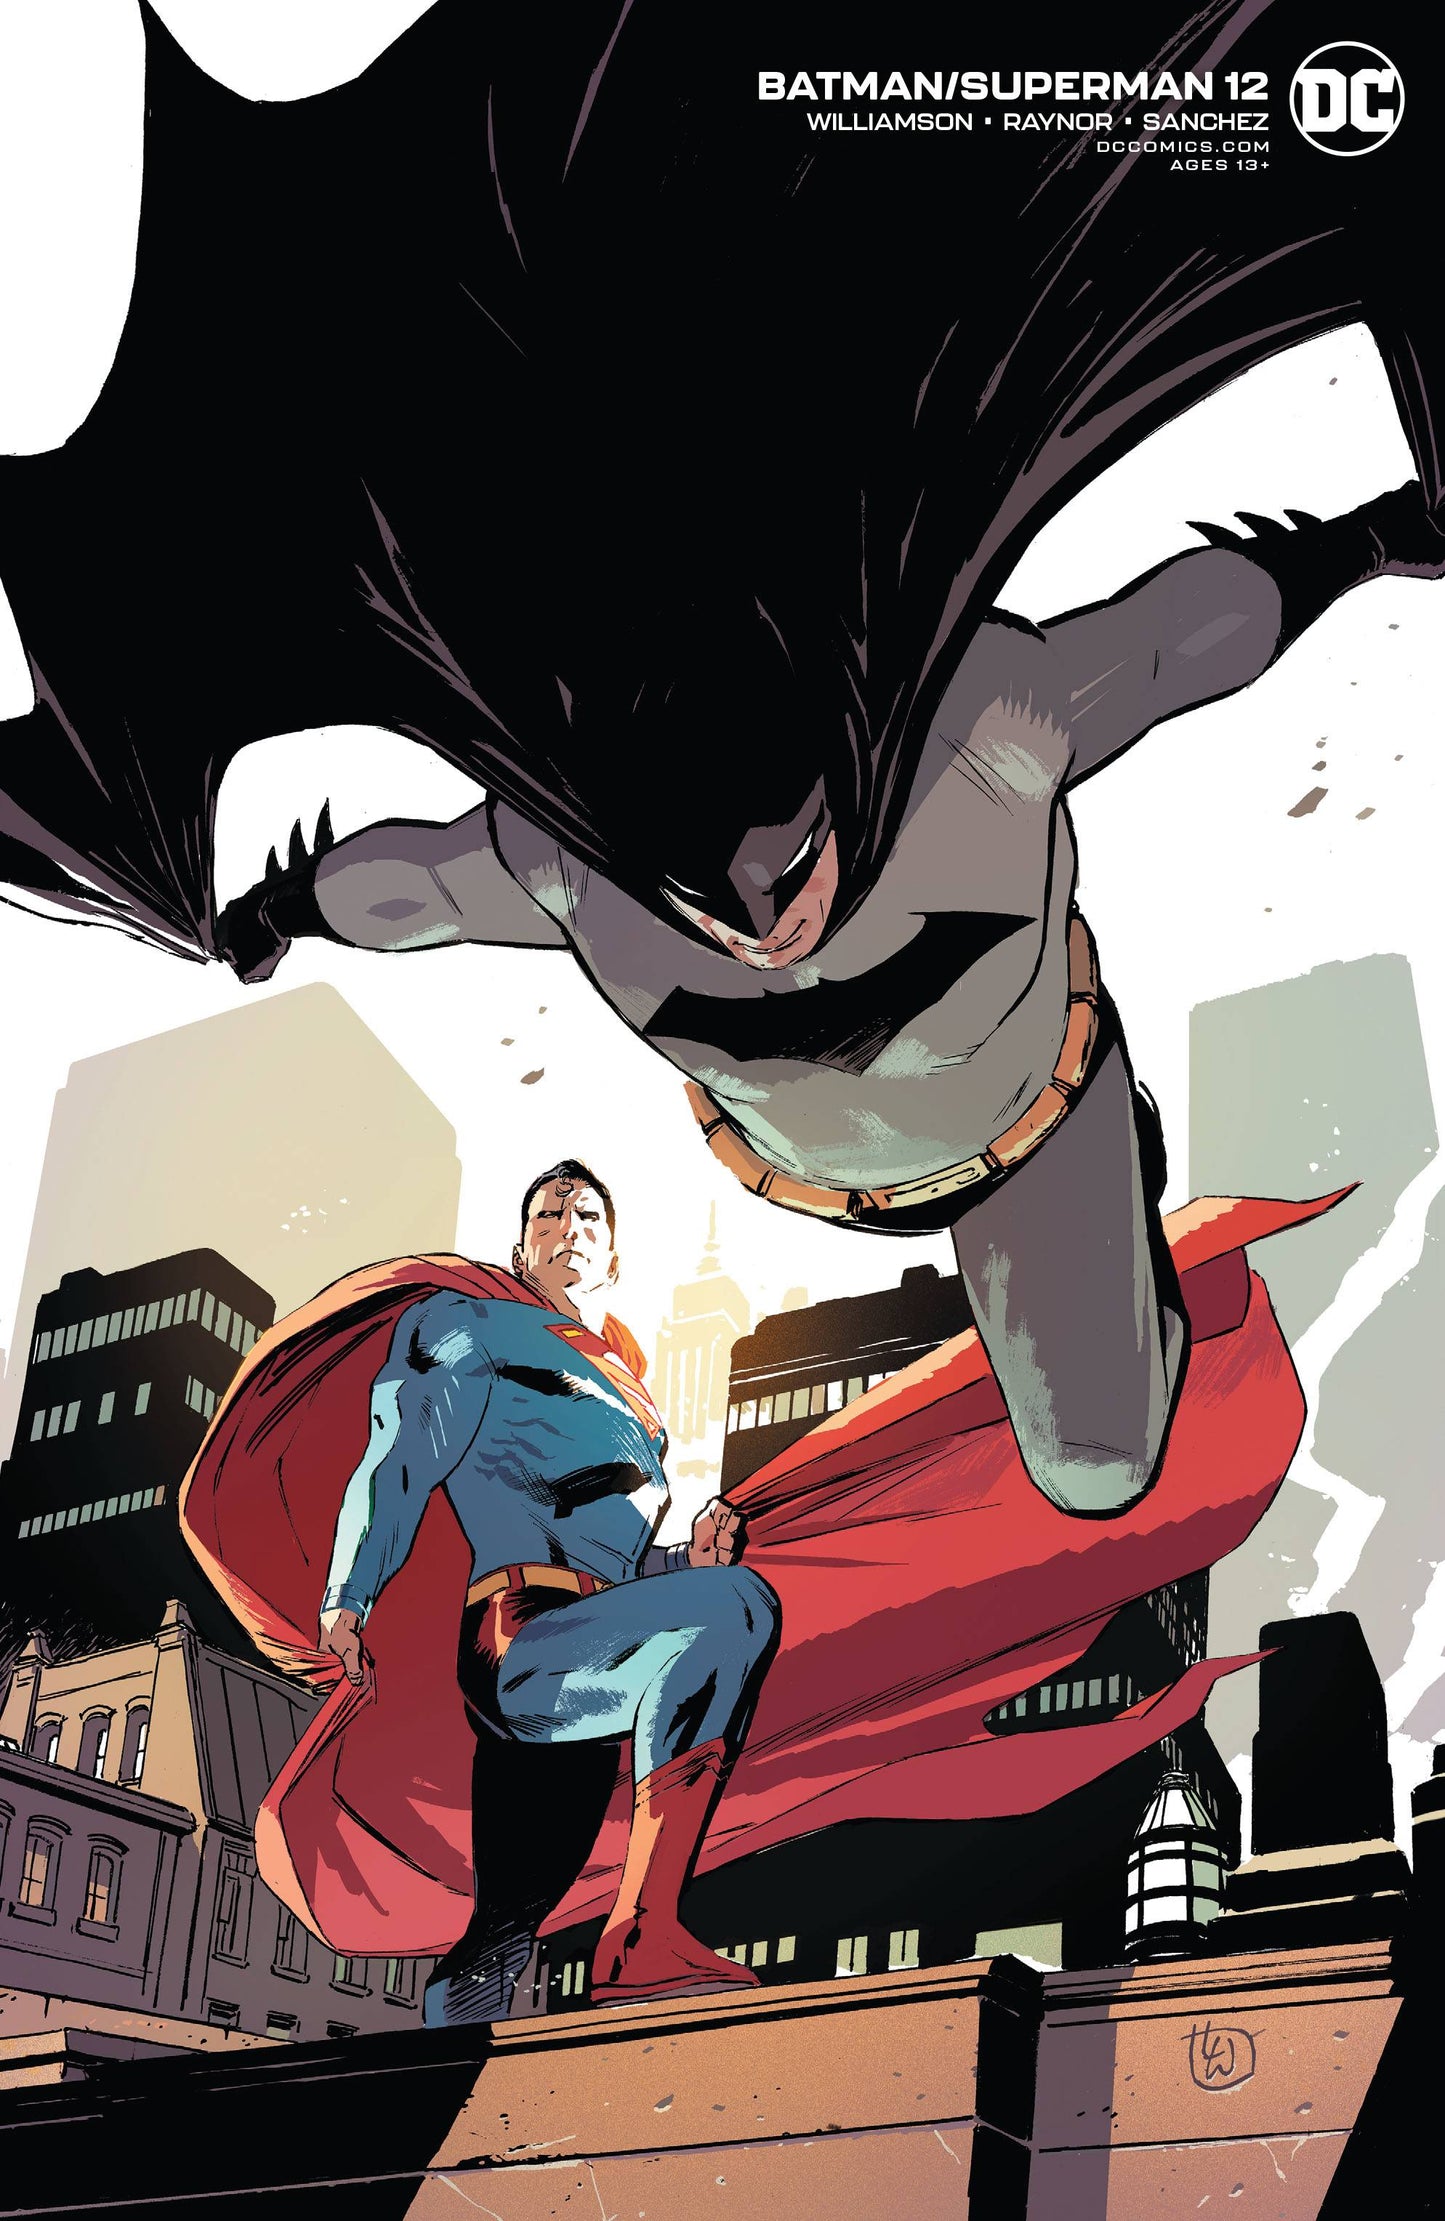 BATMAN SUPERMAN #12 CARD STOCK LEE WEEKS VAR